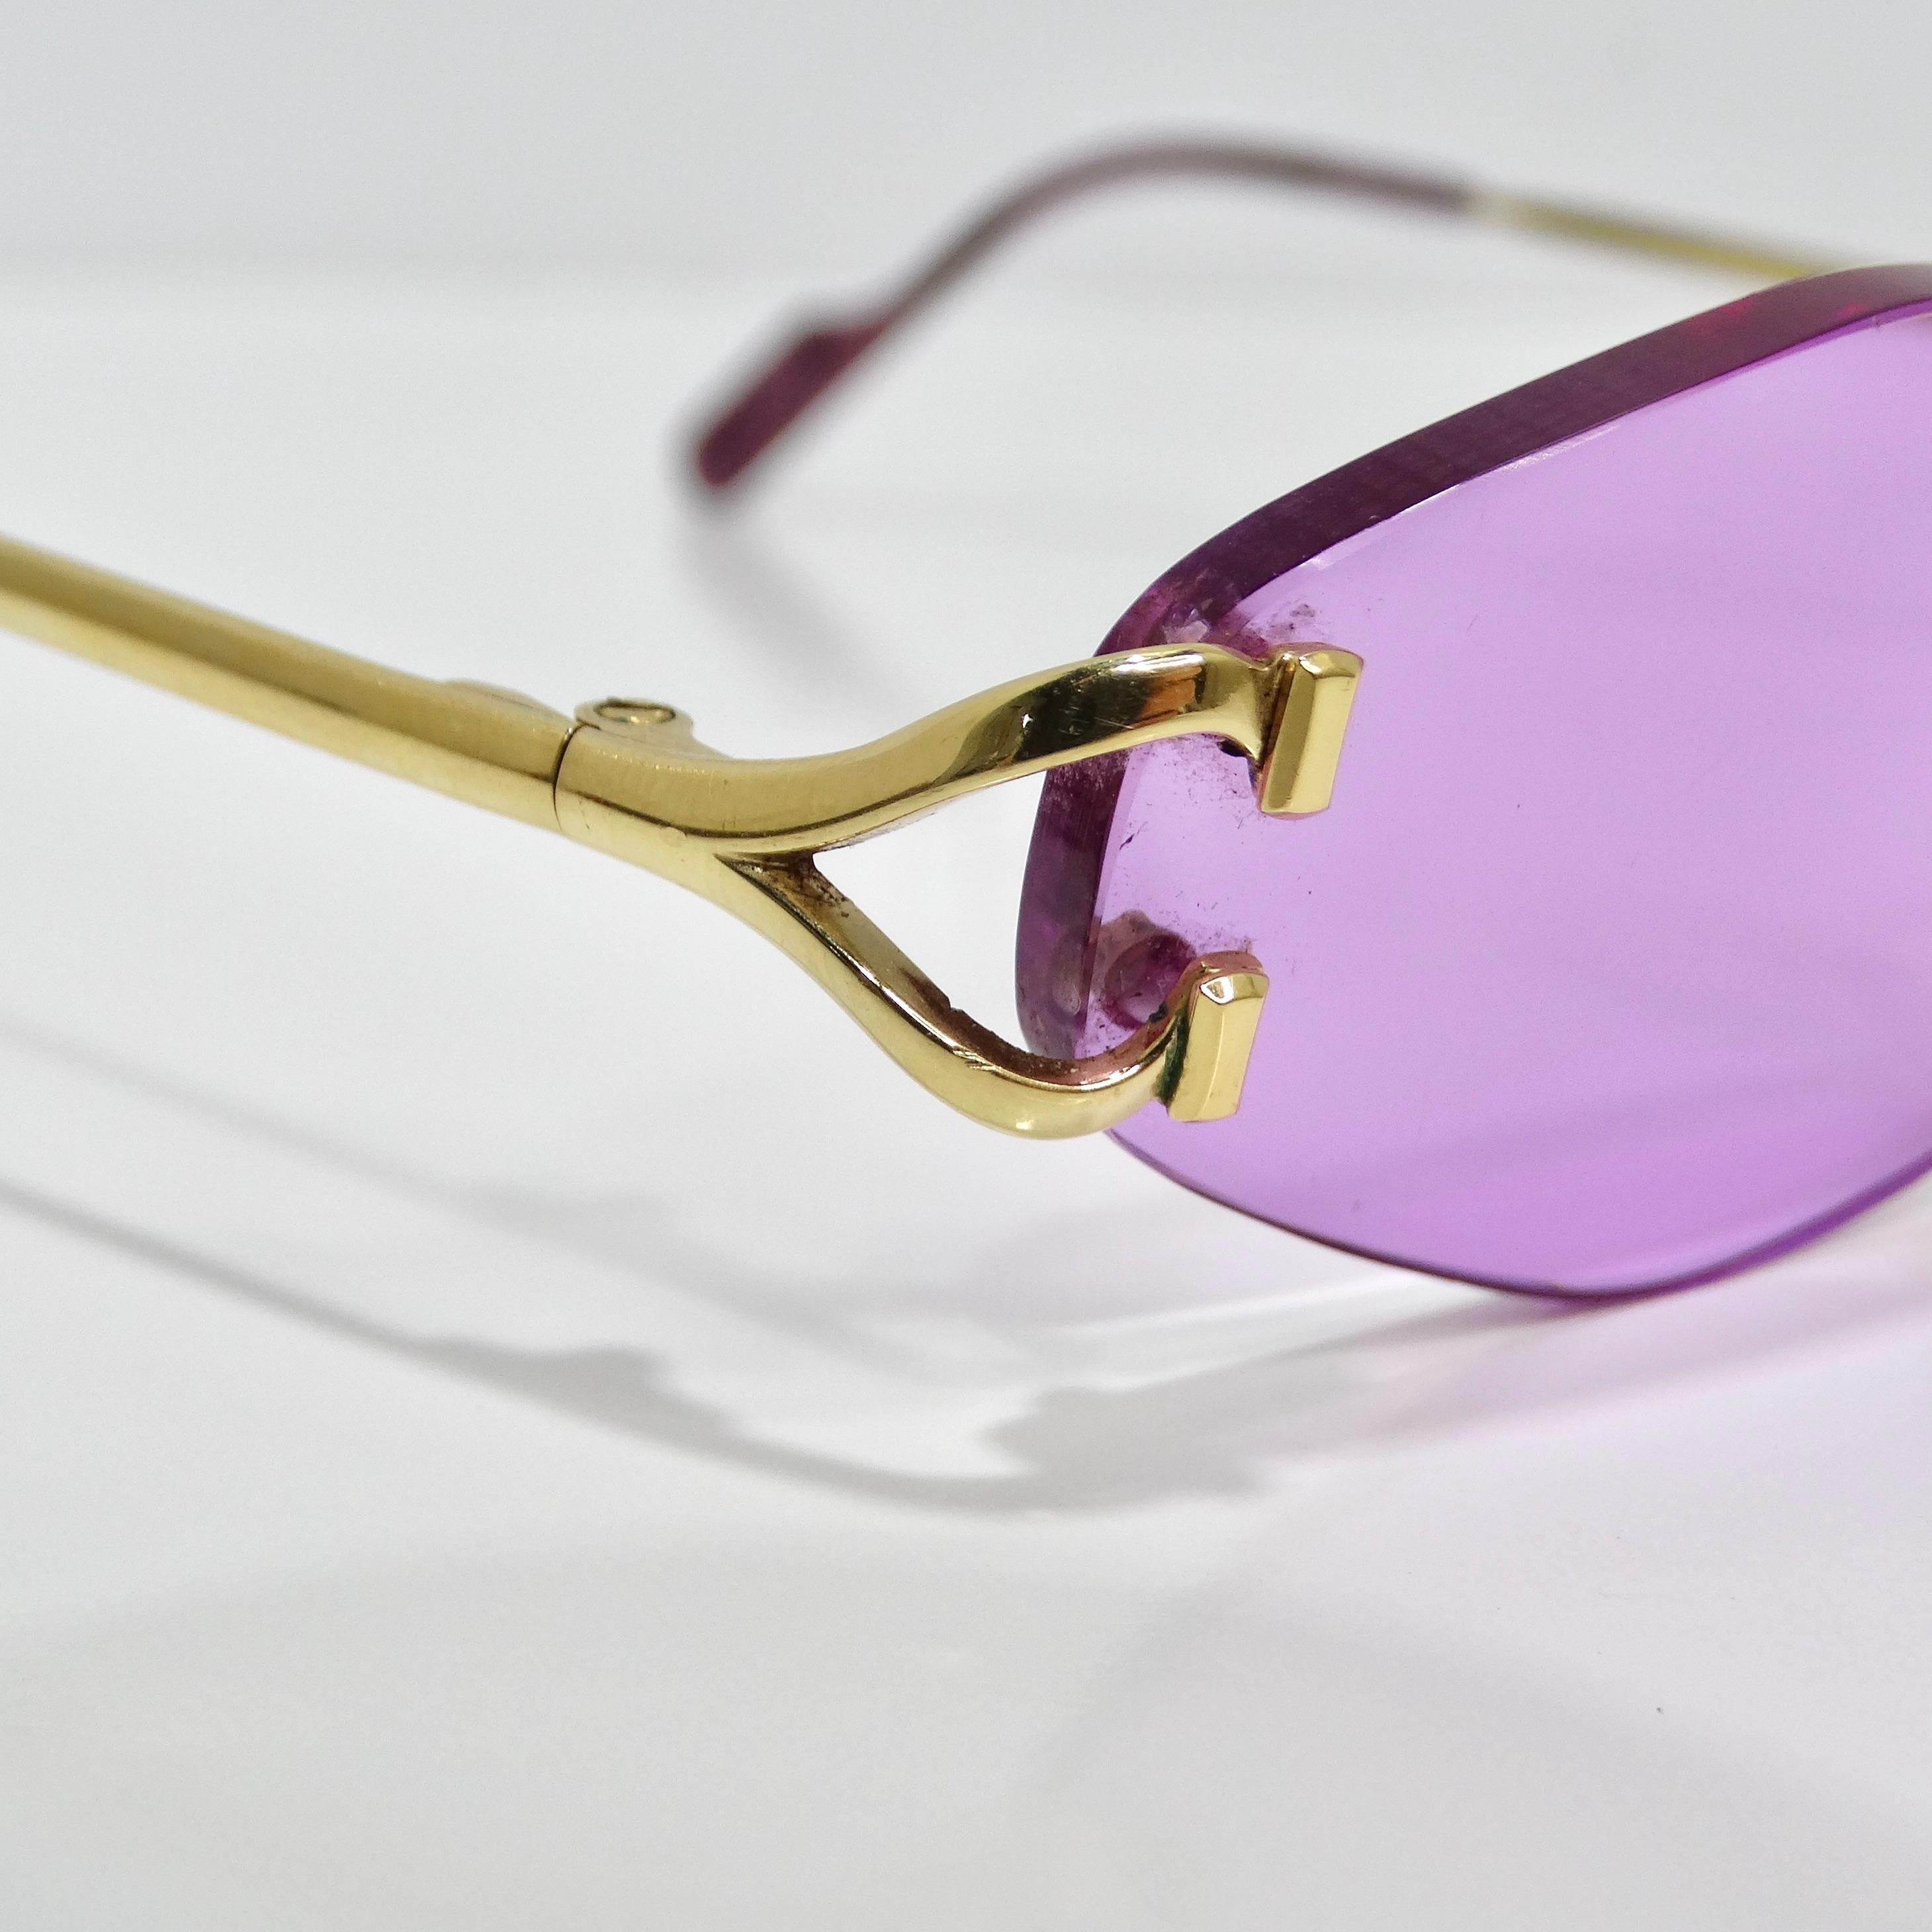 Erhöhen Sie Ihren Stil mit der Cartier Vintage Rimless Sunglasses in Lila, einer schicken Anspielung auf die Mode der frühen 2000er Jahre. Diese auffällige Sonnenbrille hat sechseckige, randlose Gläser in einem leuchtenden Lila-Ton, die einen kühnen